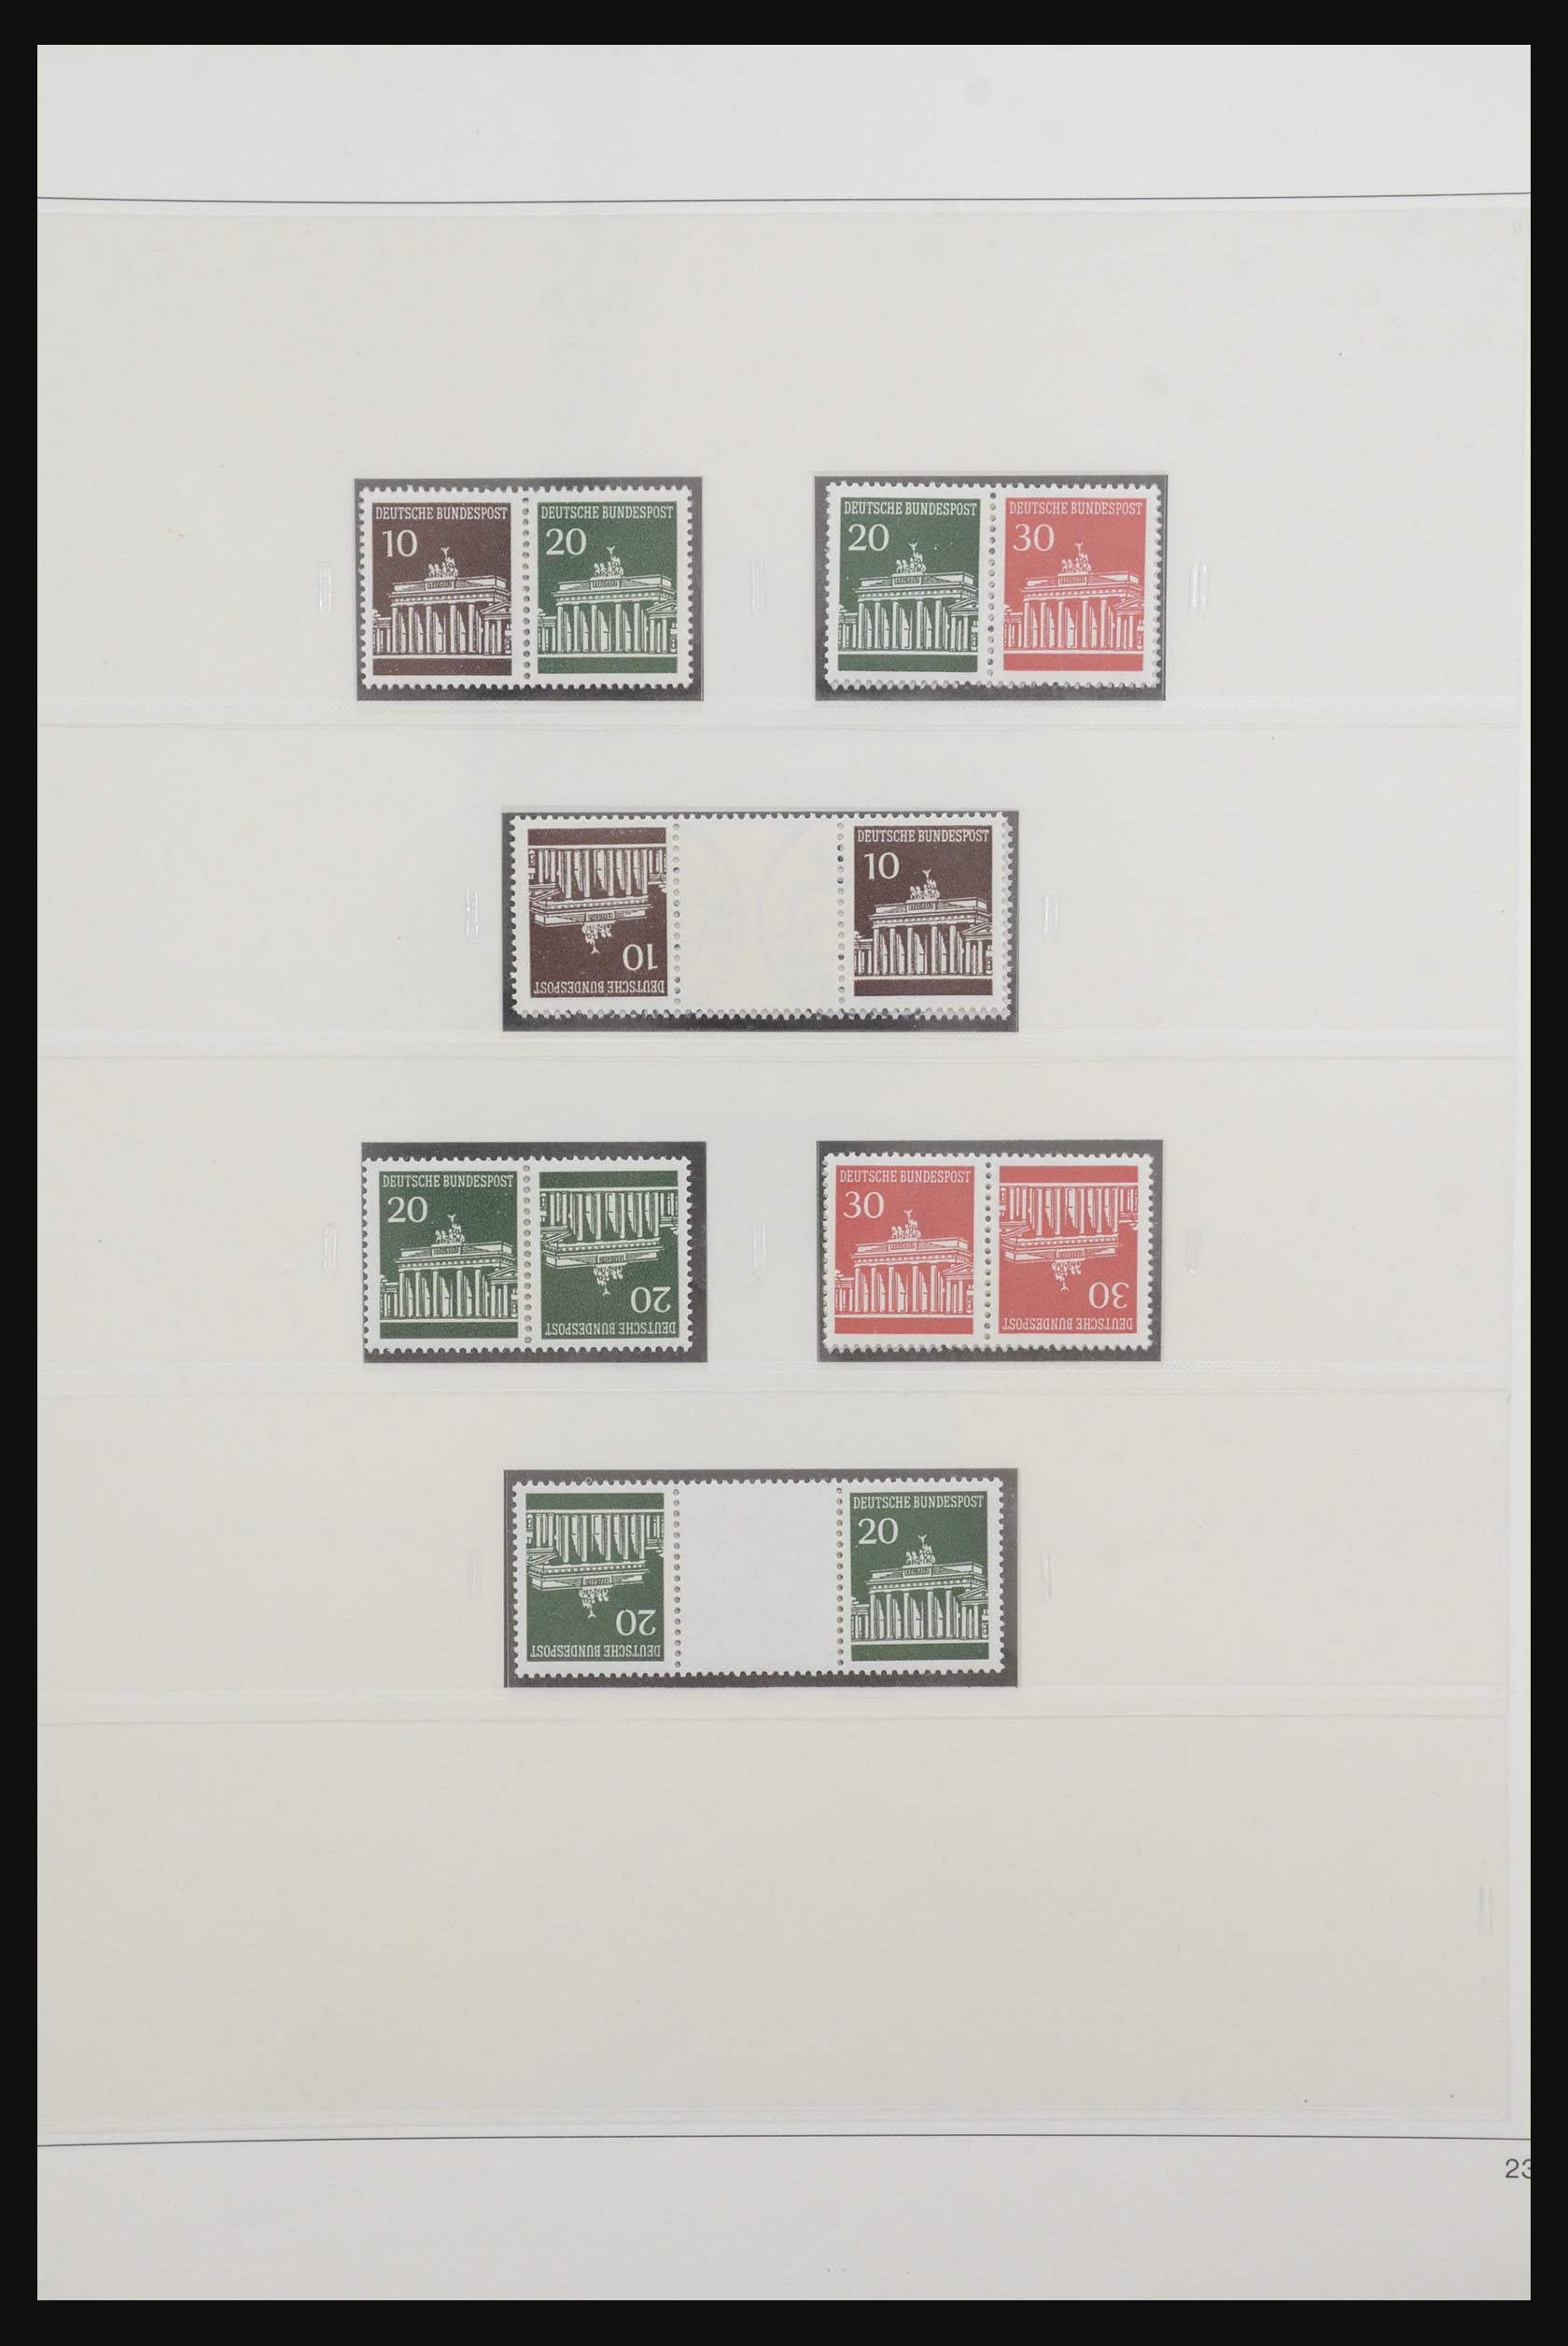 31842 031 - 31842 Bundespost combinaties 1951-2003.